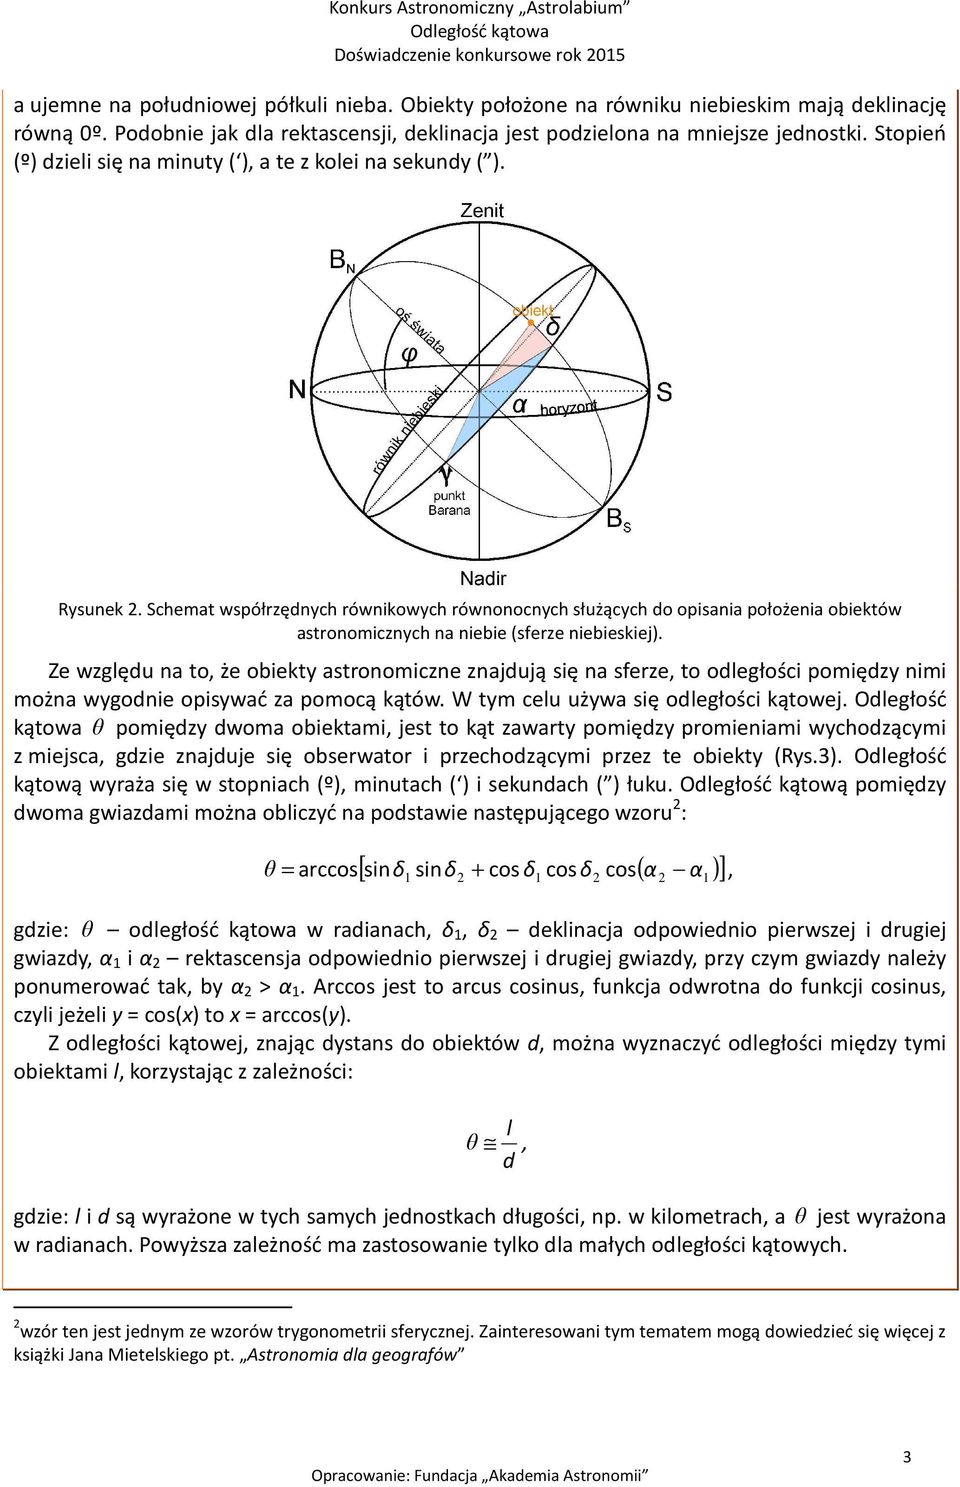 Schemat współrzędnych równikowych równonocnych służących do opisania położenia obiektów astronomicznych na niebie (sferze niebieskiej).